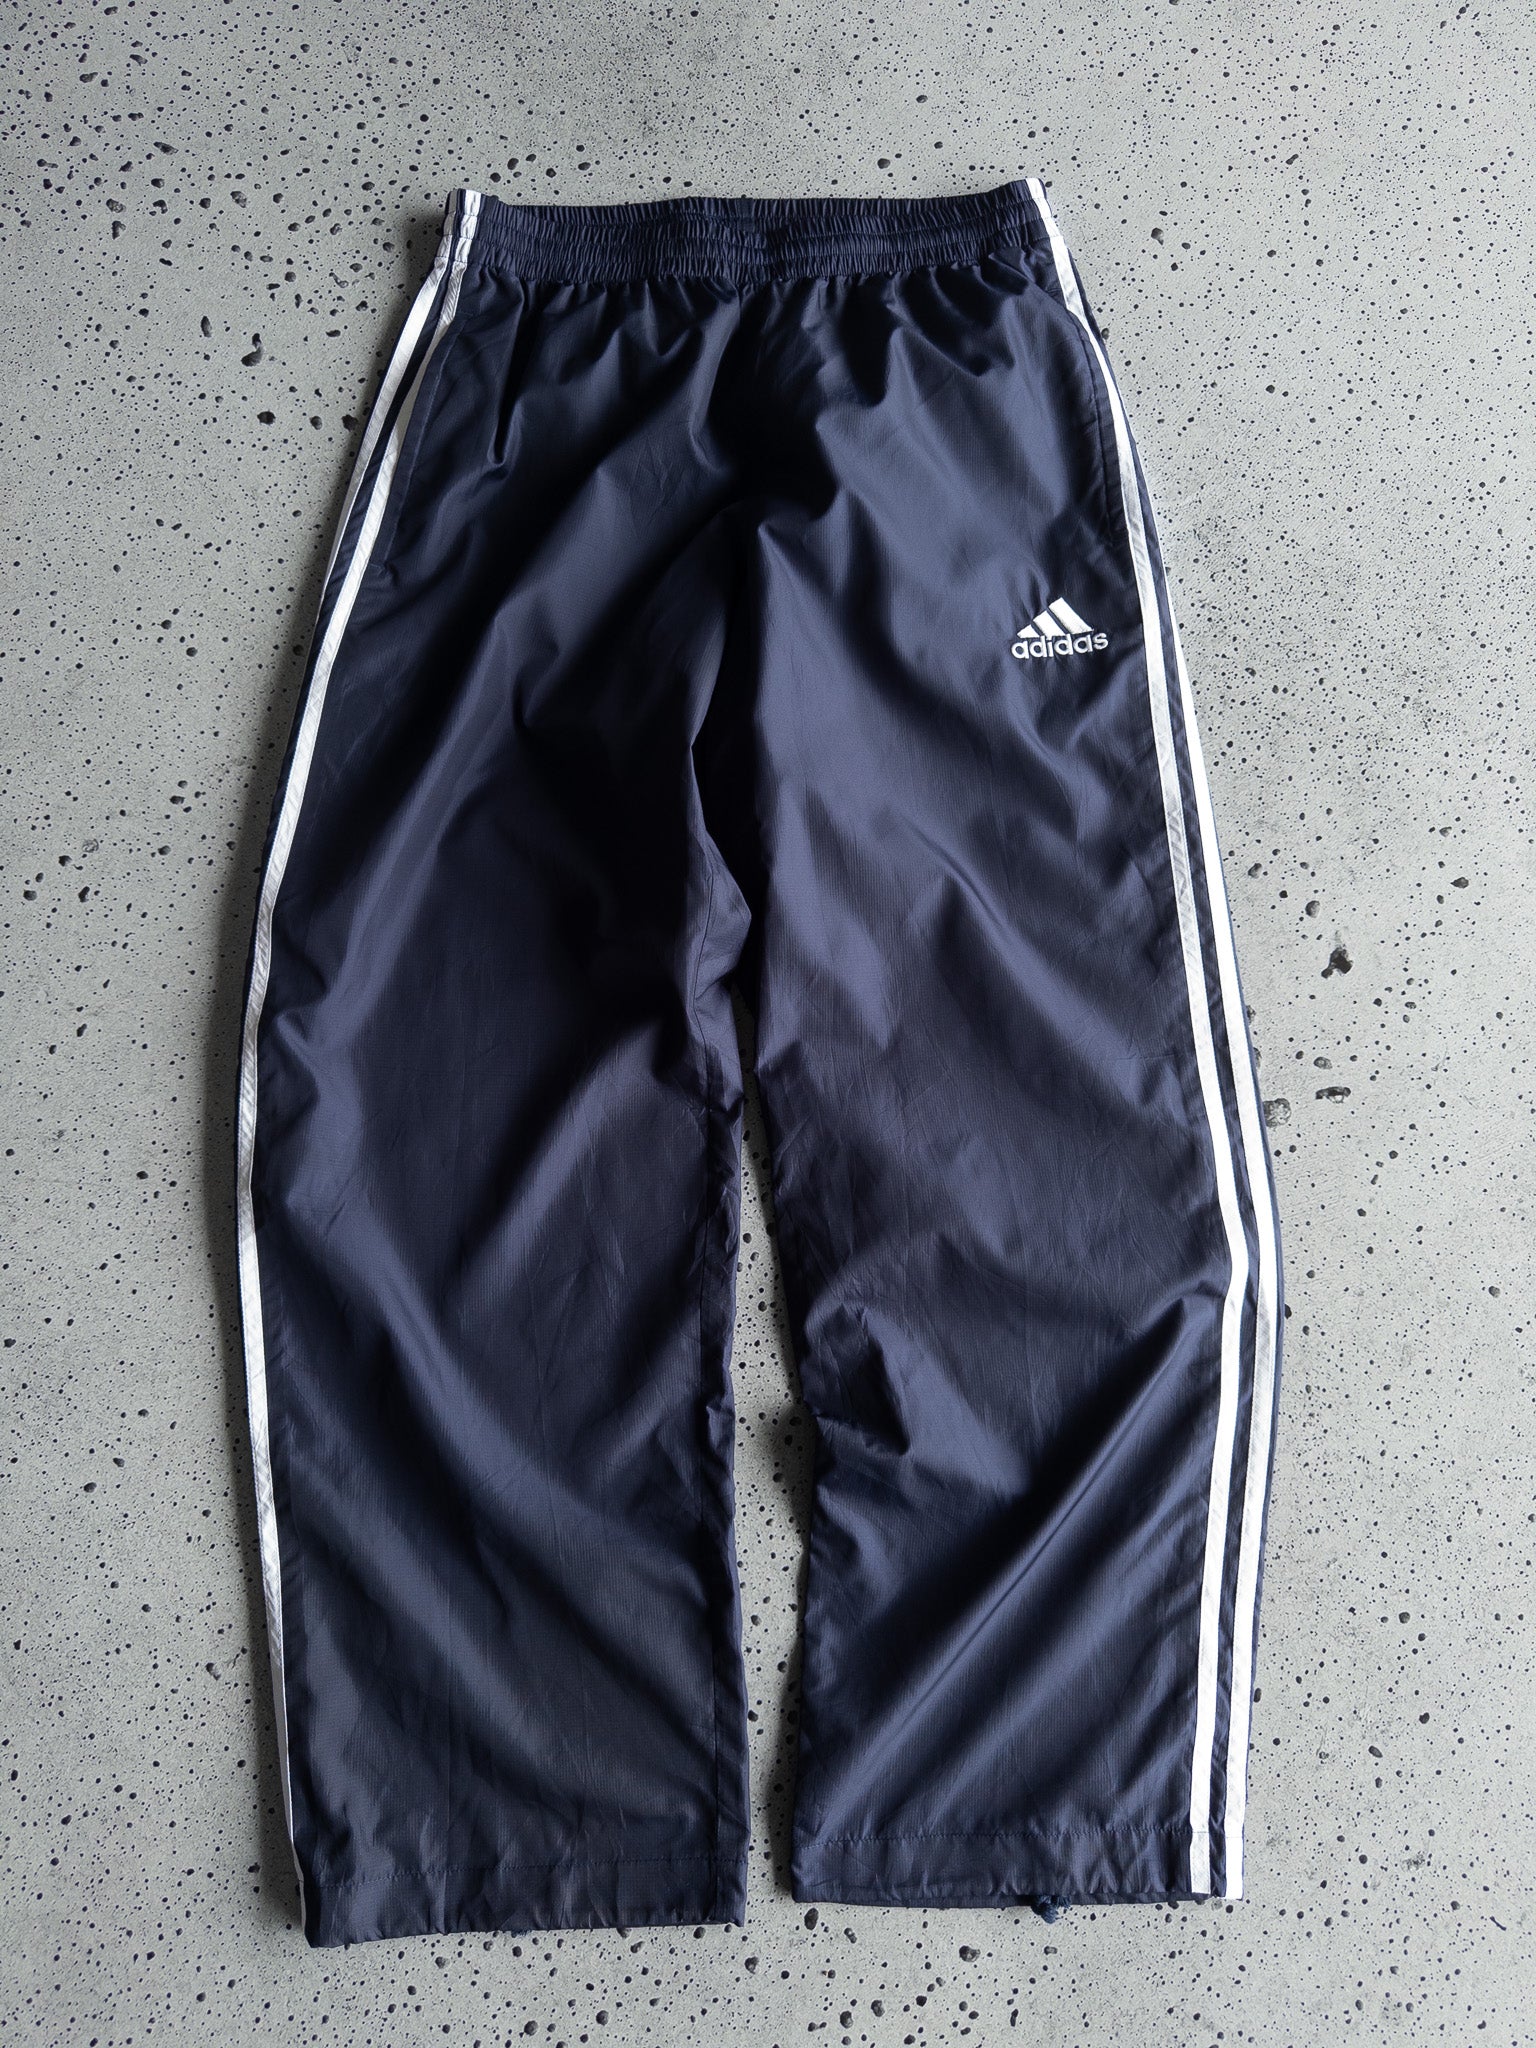 Vintage Adidas Track Pants (M)